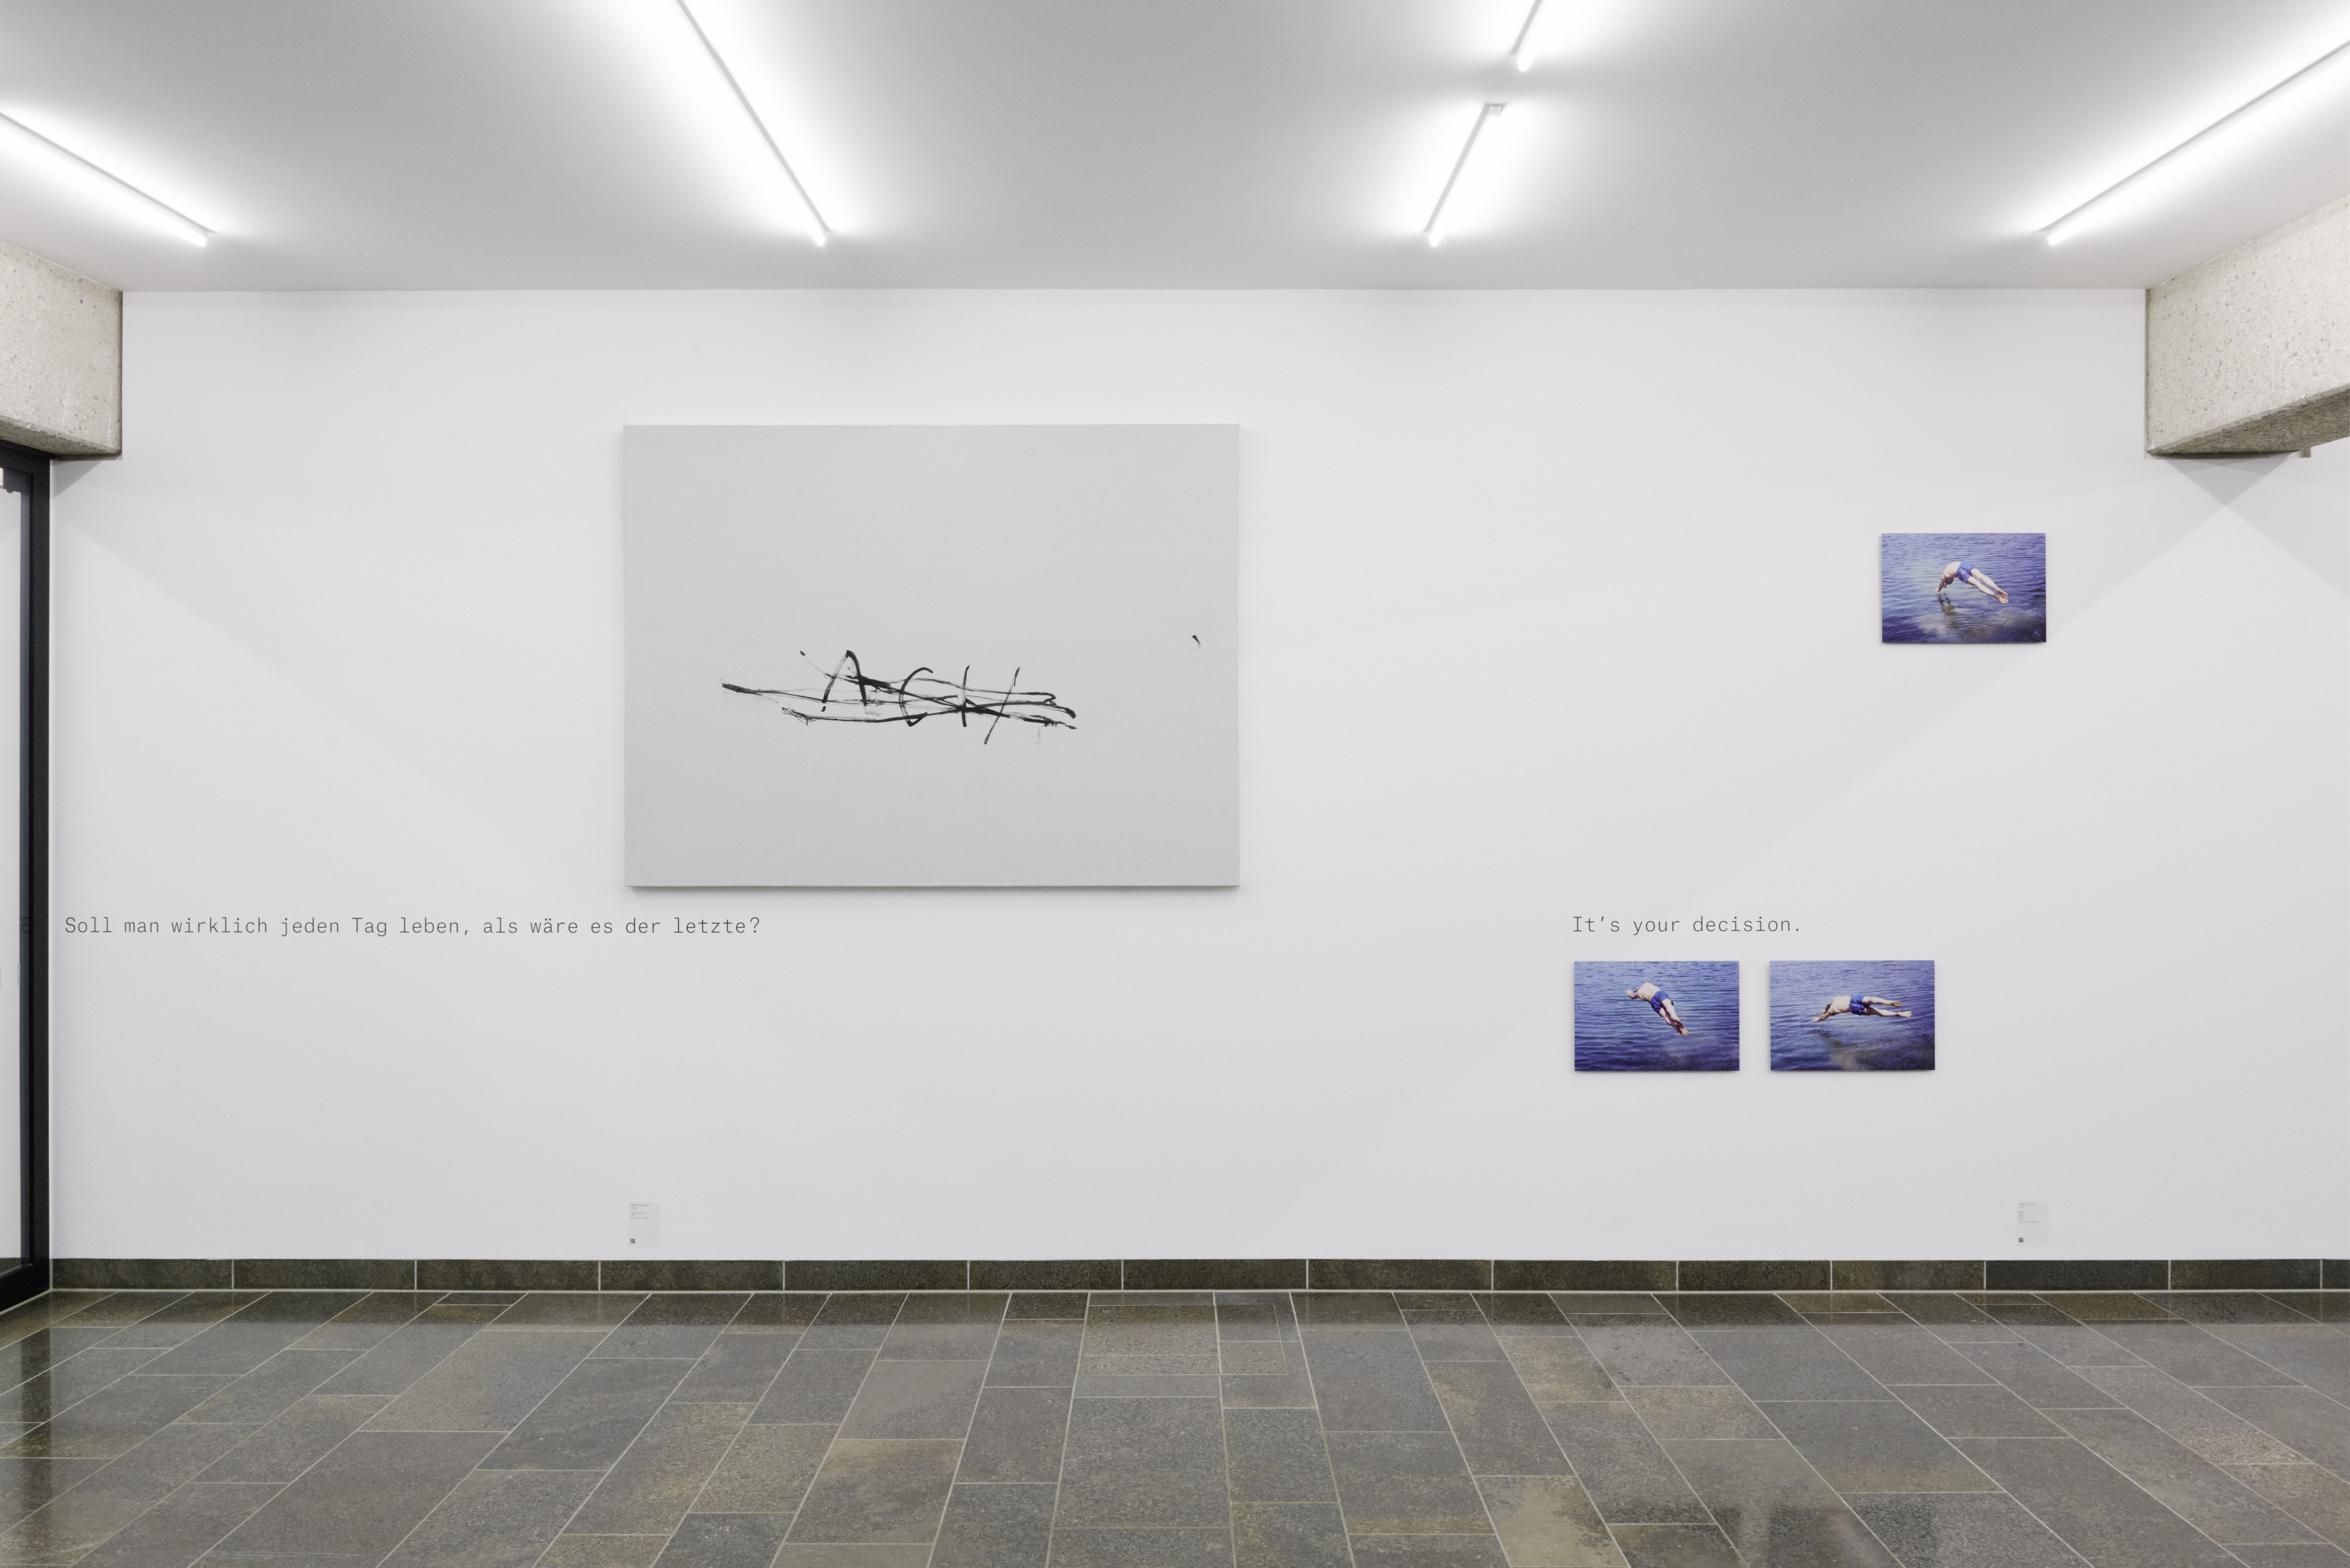 Blick in die Ausstellung Q&A, 2016-2017 - Stefan Sandner, Tamara Grcic